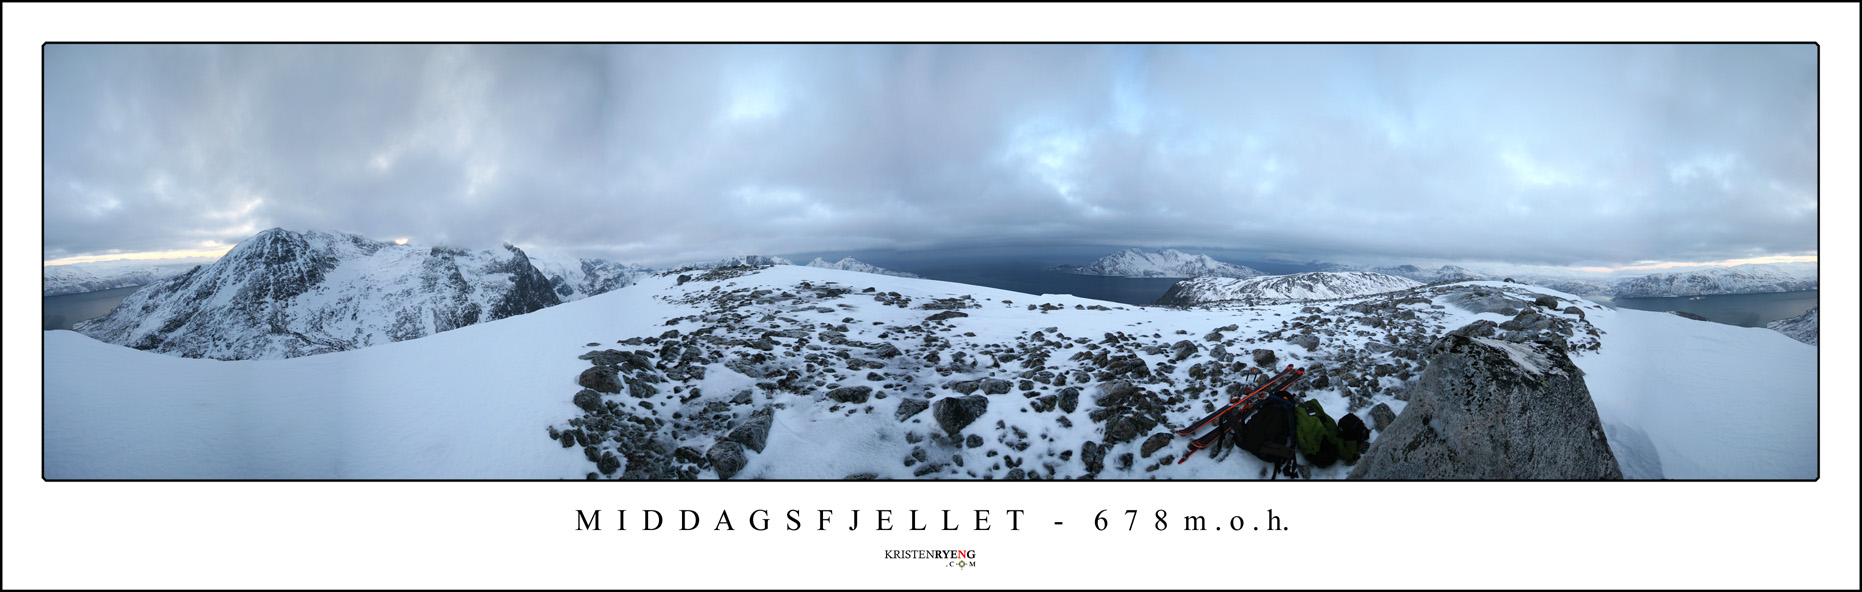 Hjemmeside - Middagsfjellet.jpg - Panoramautsikt fra Middagsfjellet.